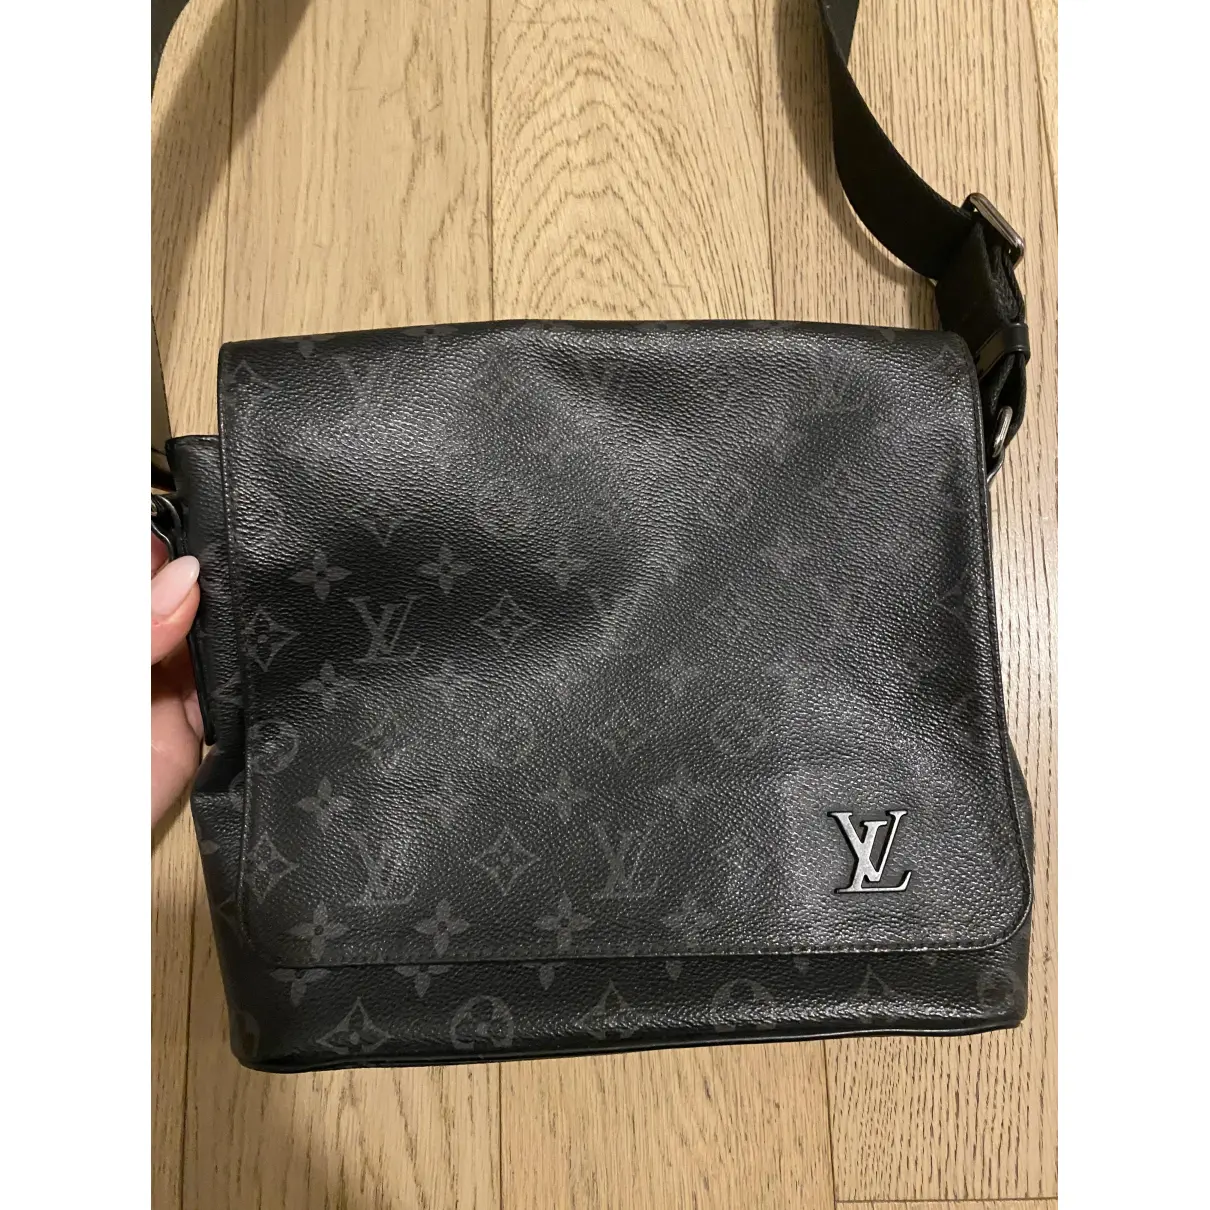 Buy Louis Vuitton District cloth satchel online